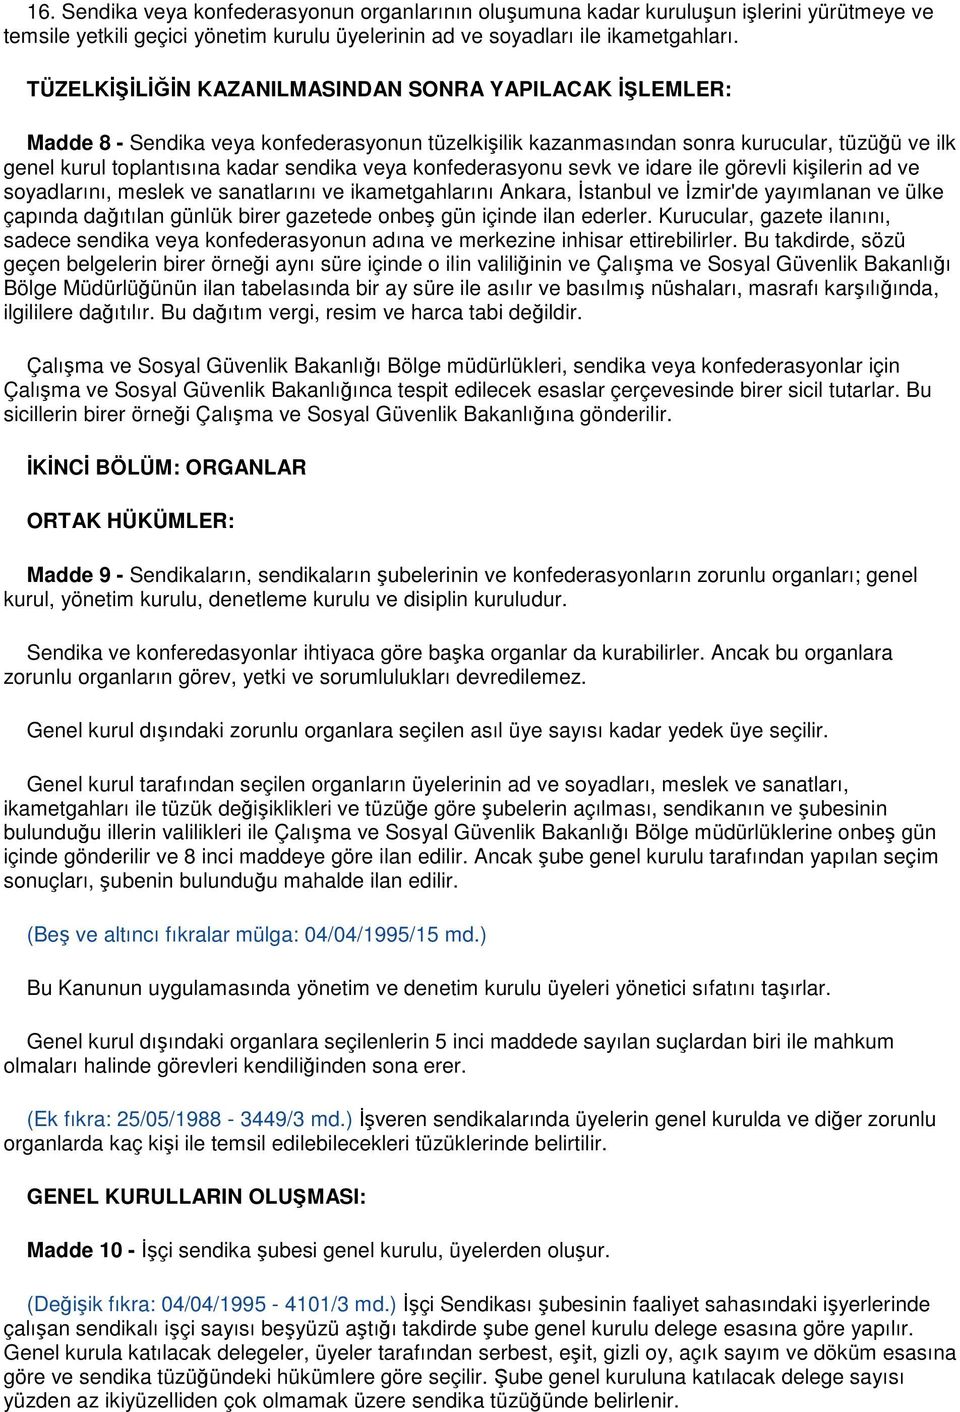 konfederasyonu sevk ve idare ile görevli kişilerin ad ve soyadlarını, meslek ve sanatlarını ve ikametgahlarını Ankara, Đstanbul ve Đzmir'de yayımlanan ve ülke çapında dağıtılan günlük birer gazetede